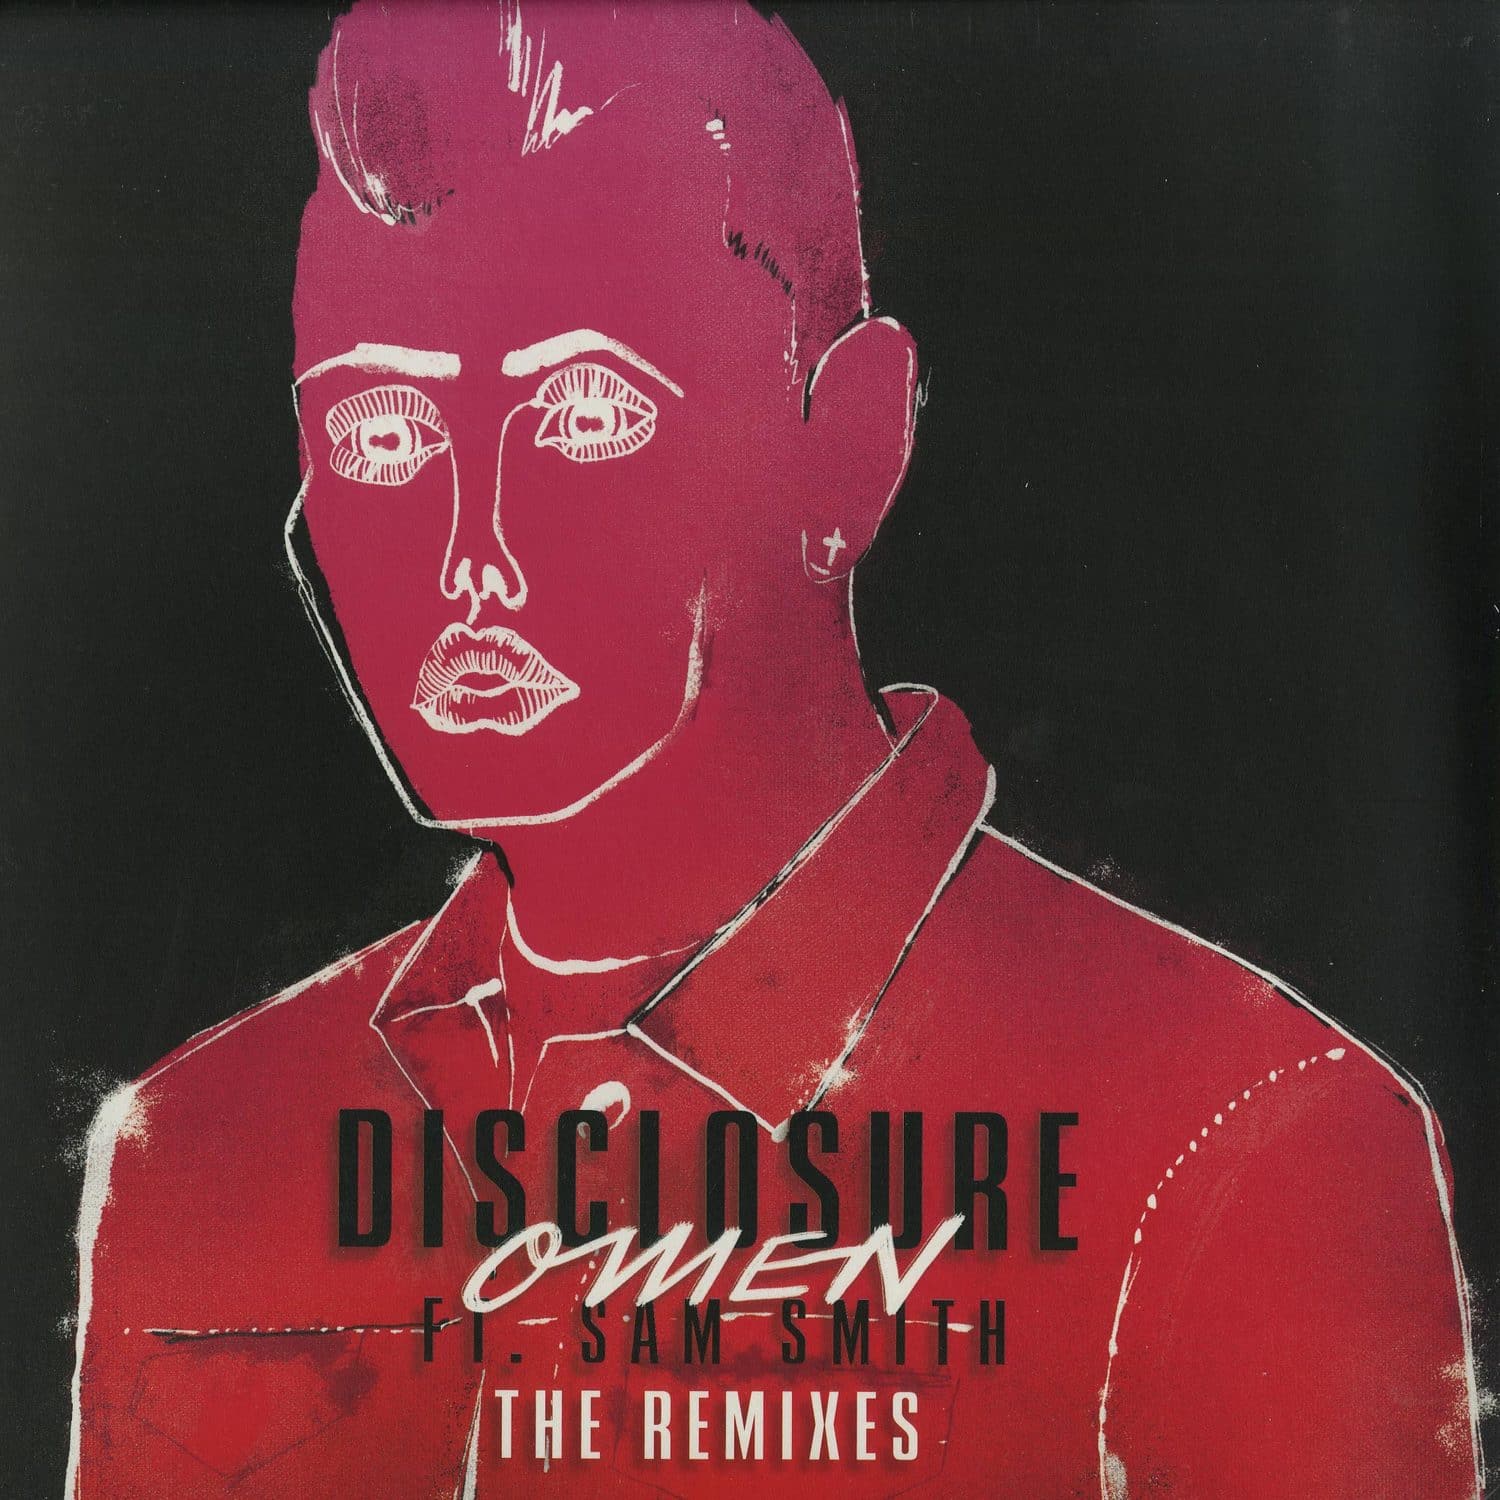 Disclosure ft. Sam Smith - OMEN - REMIXES